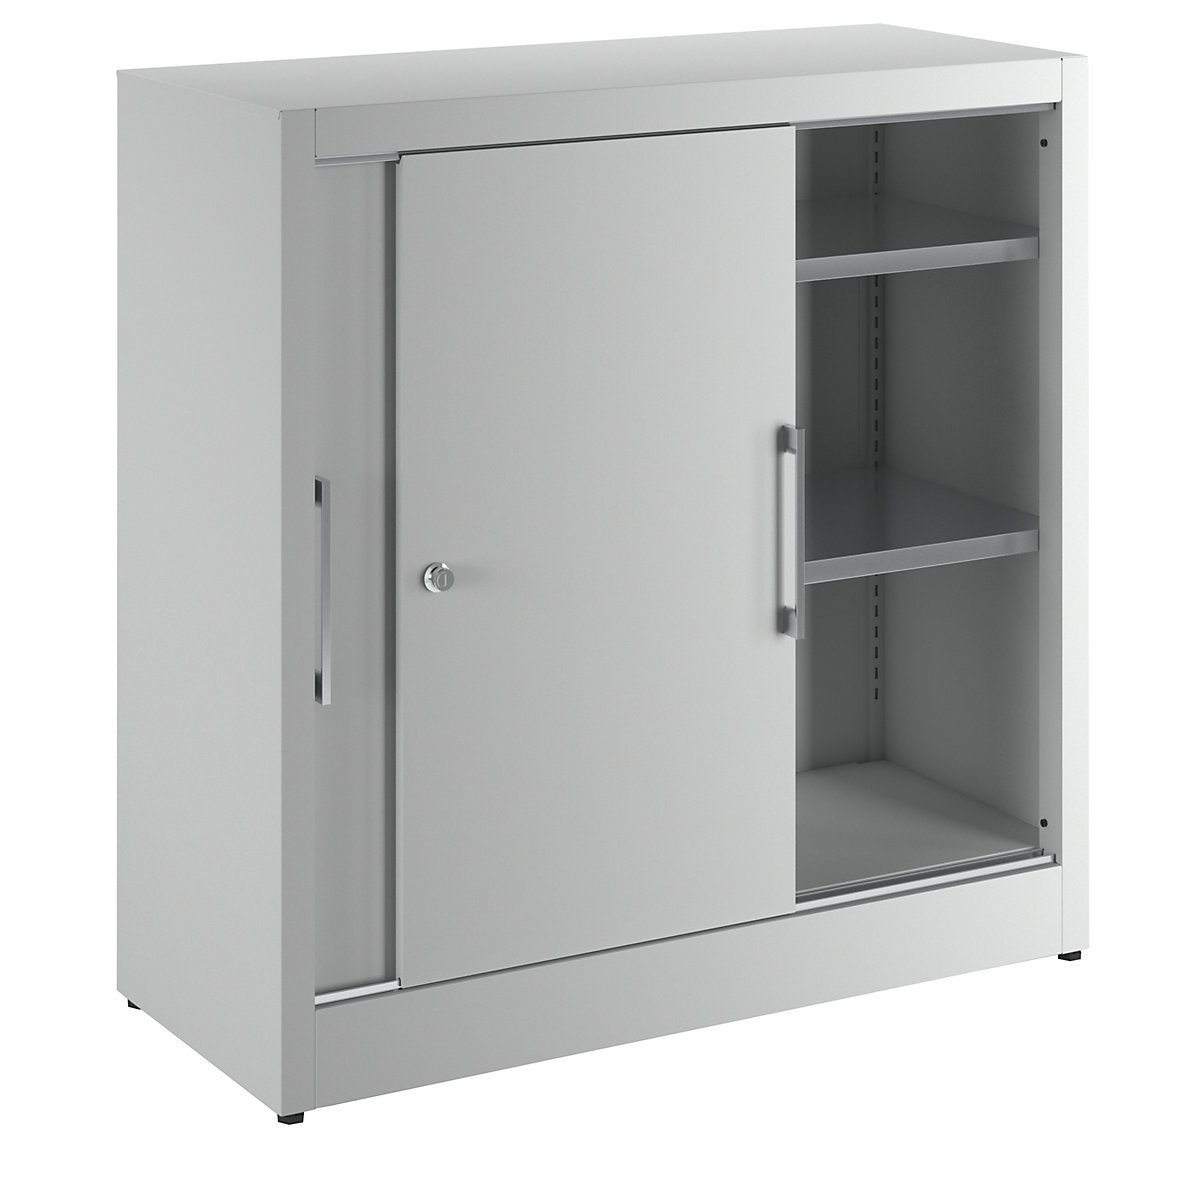 Sliding door cupboard, height 1000 mm – eurokraft pro, with 2 shelves, depth 420 mm, doors in light grey RAL 7035-9